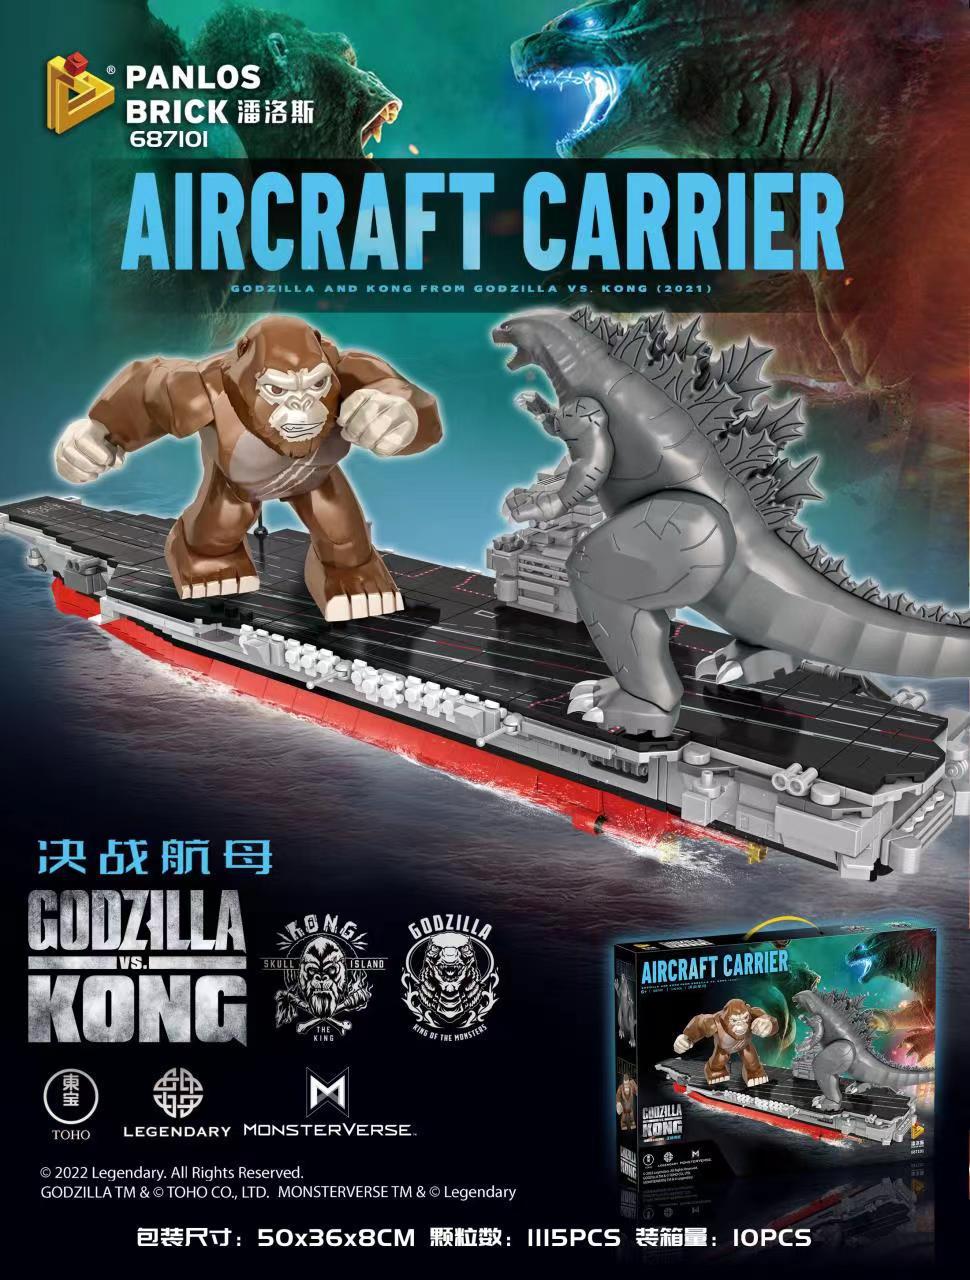 Creator PANLOSBRICK 687101 Godzilla vs. King Kong: Battle of the Carriers